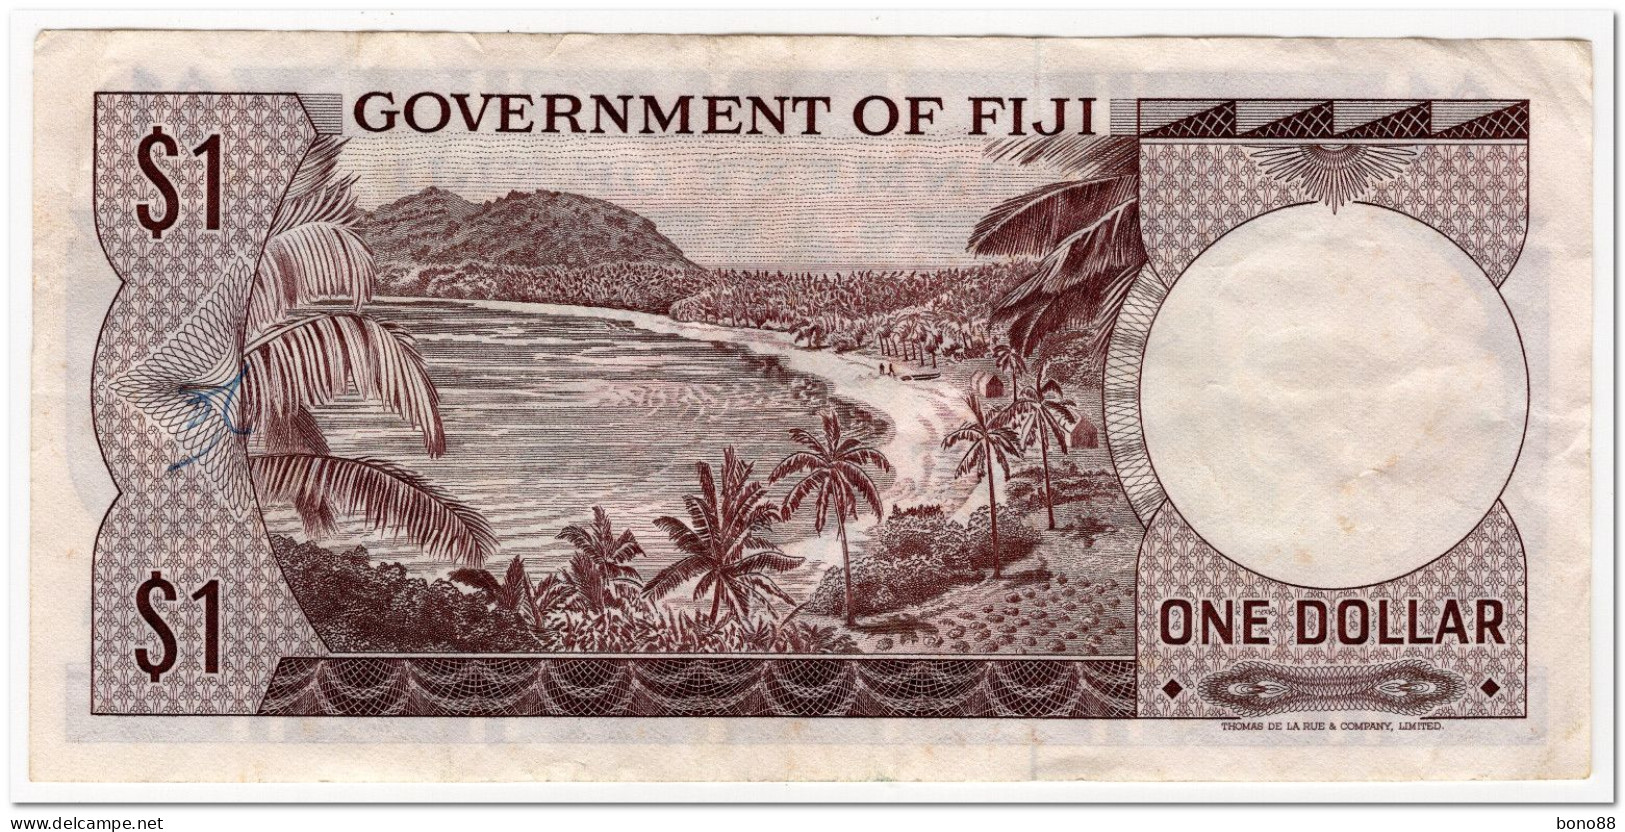 FIJI,1 DOLLAR,1969,P.59,VF,GRAFFITI - Fidji